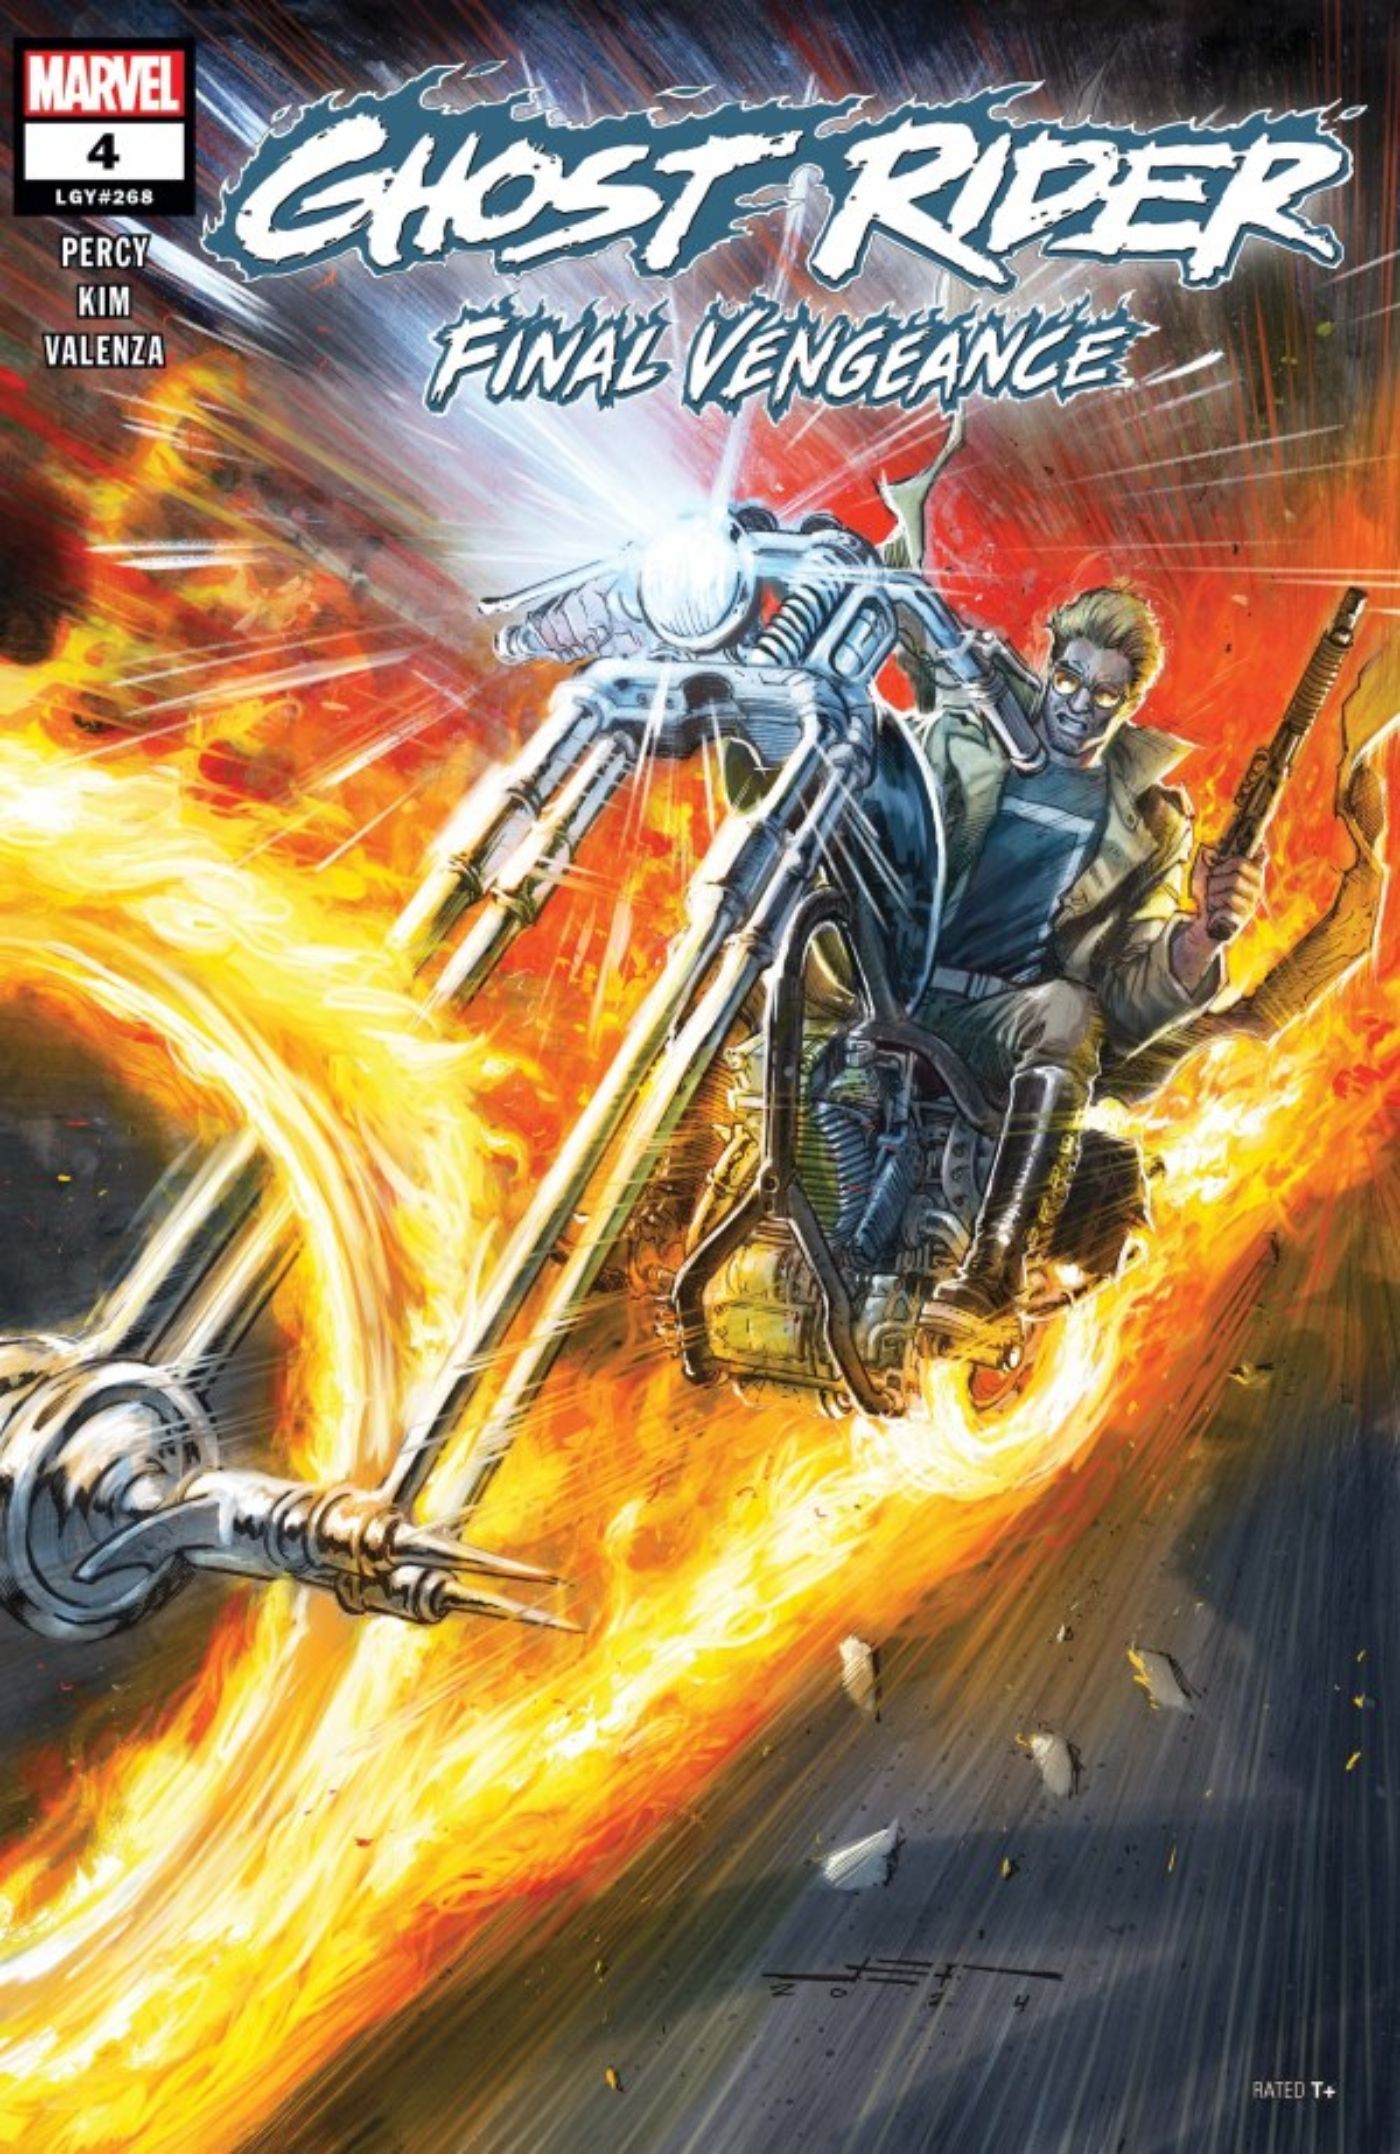 Capa de Ghost Rider: Final Vengeance #4 com Johnny Blaze pilotando uma motocicleta infernal.